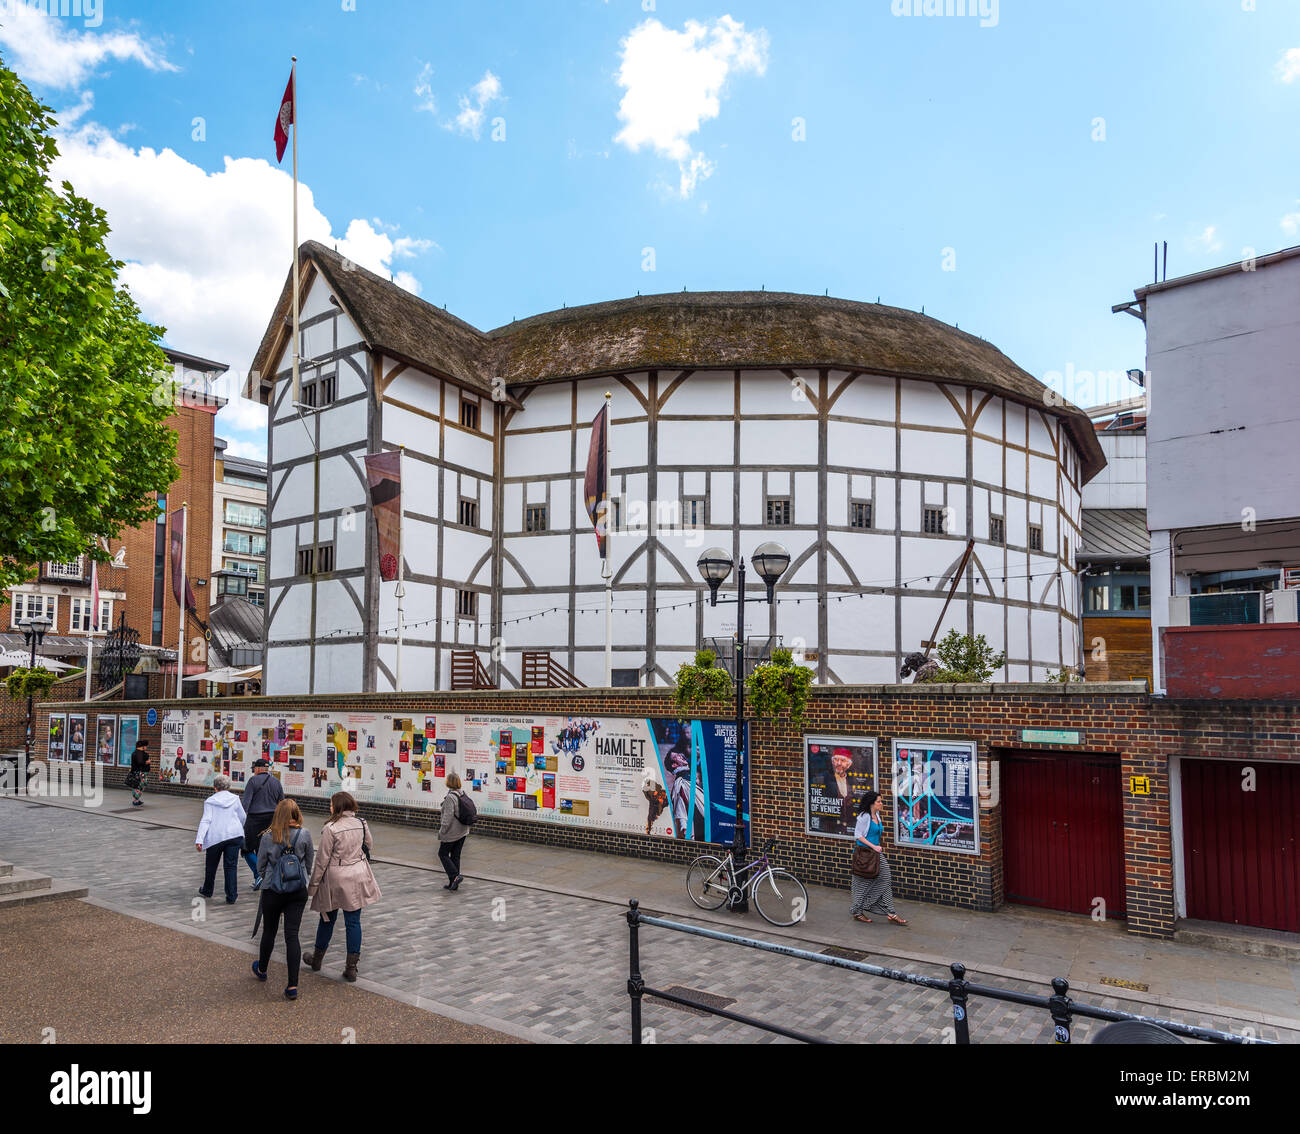 El Shakespeare's Globe, una reconstrucción moderna del mundo un teatro Isabelino Playhouse. Situado en Southwark, Londres. Foto de stock